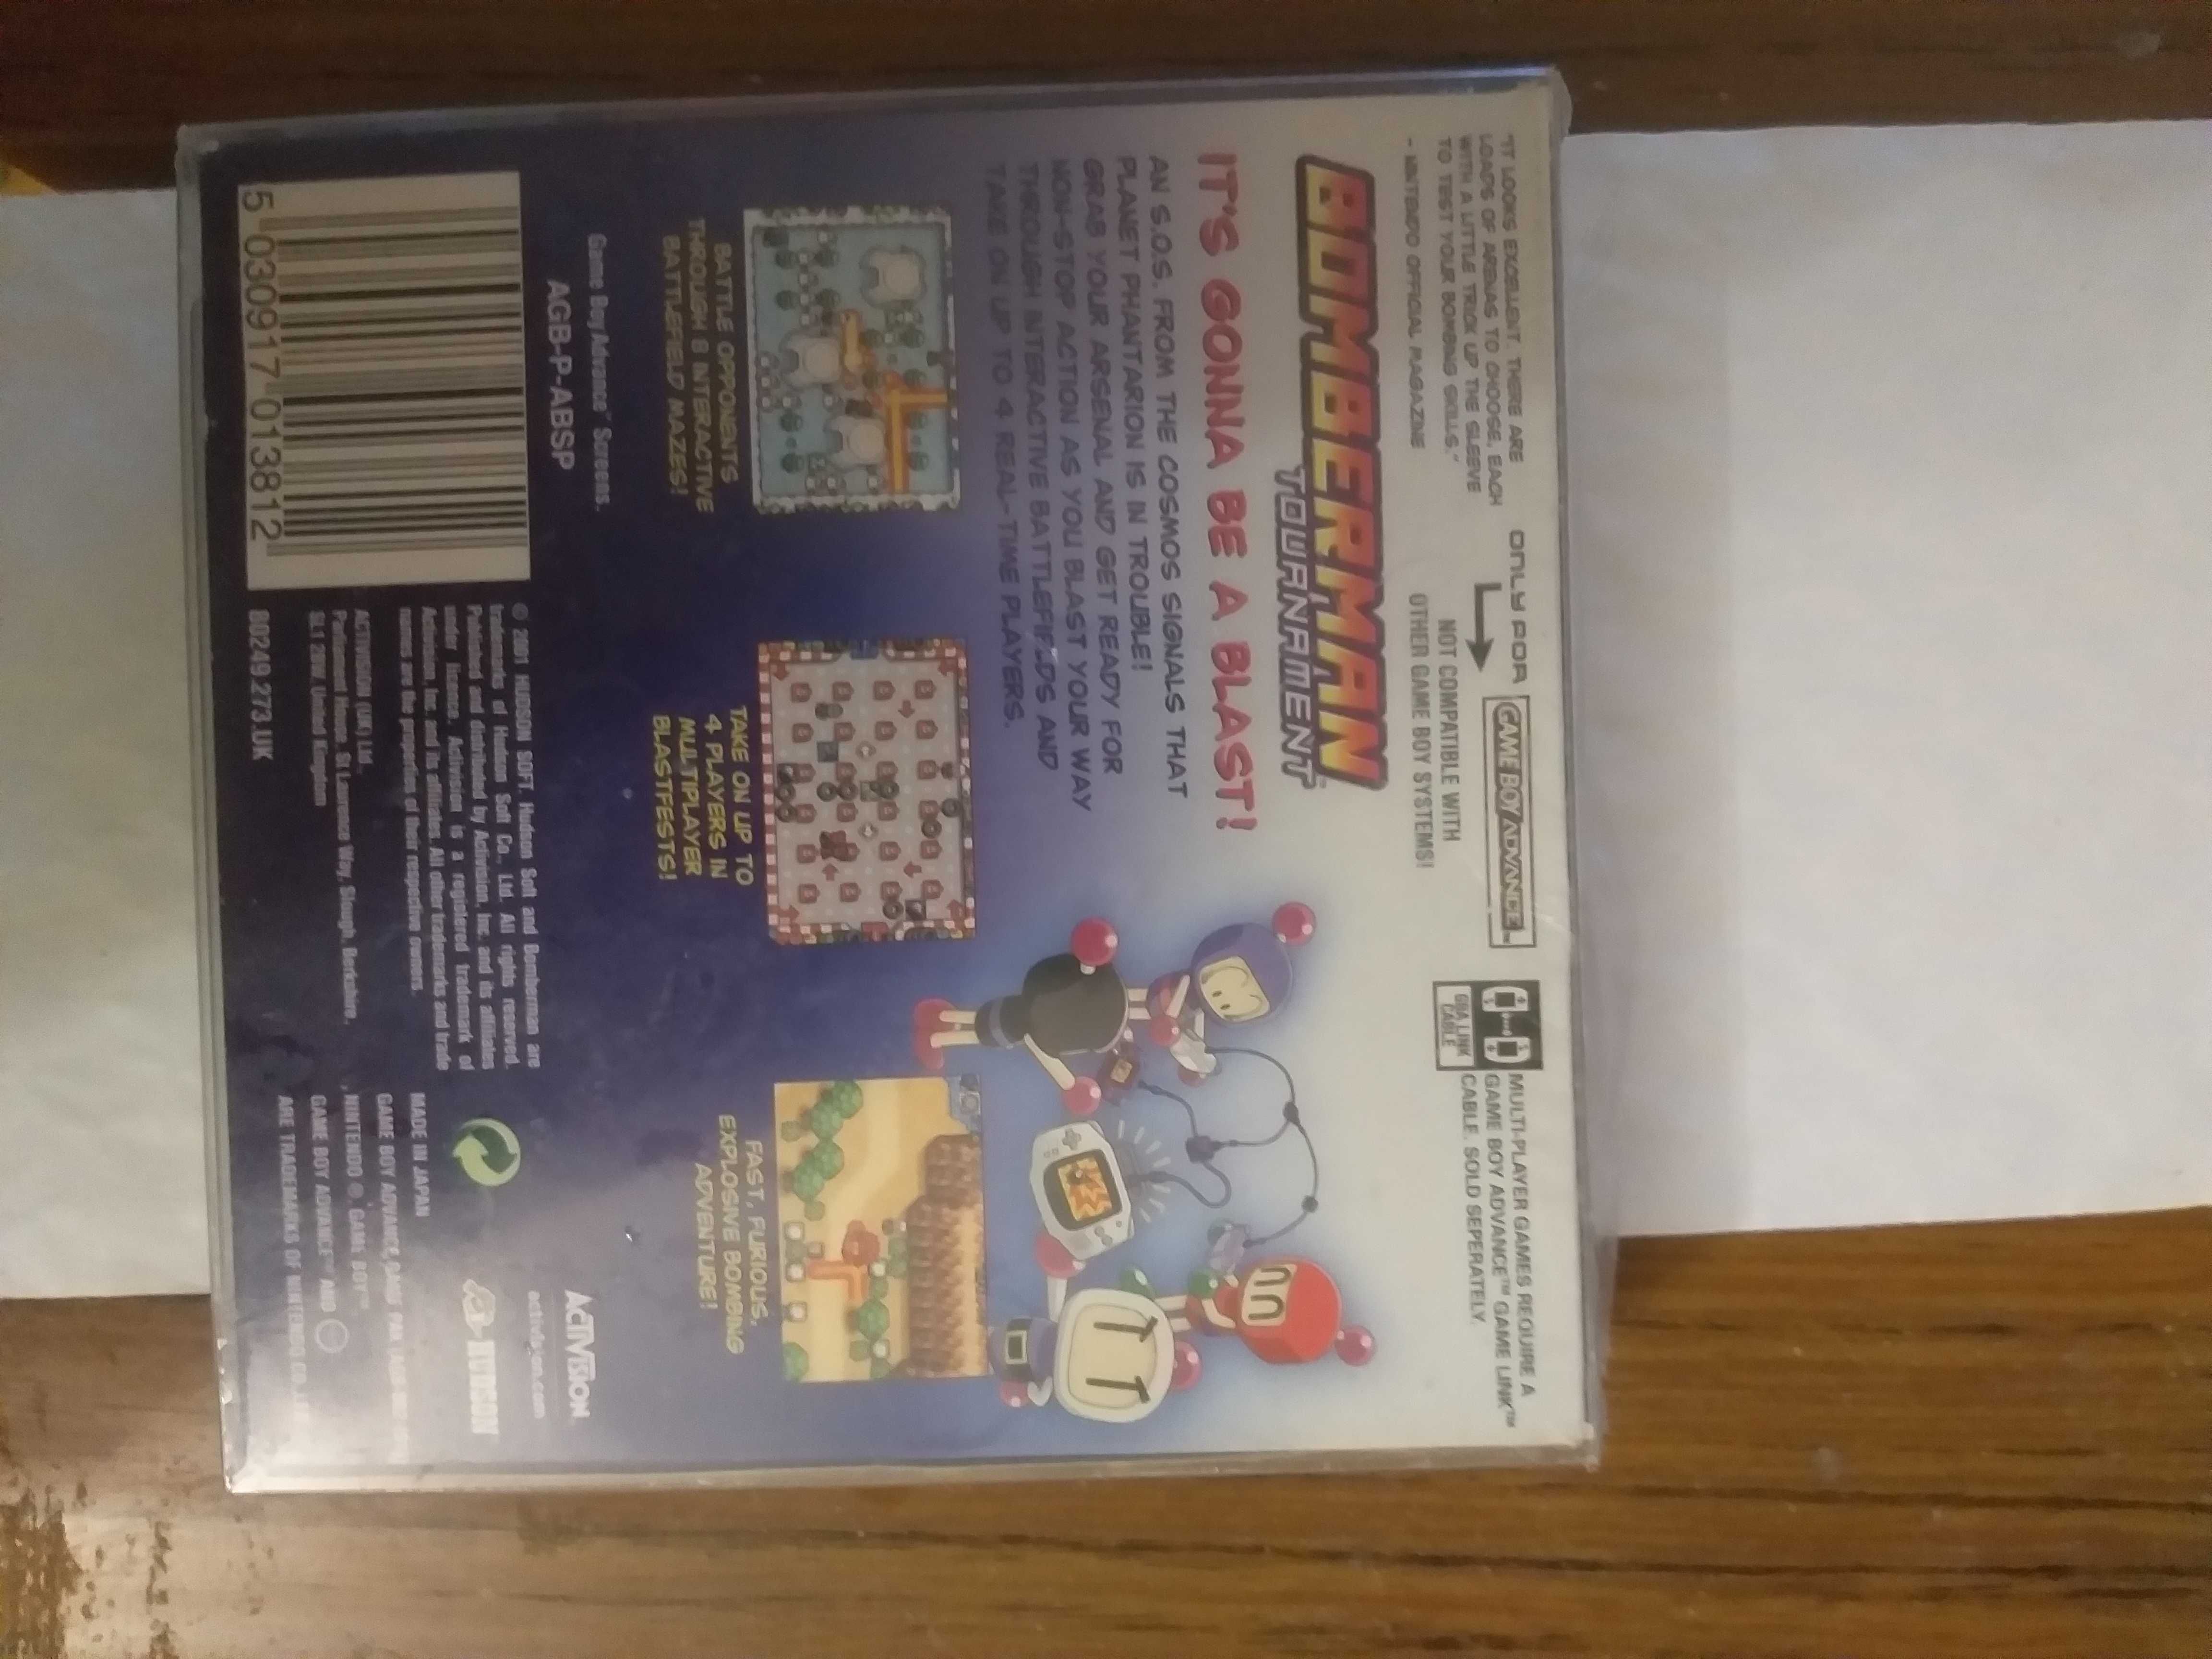 Bomberman Tournament GAME BOY Advance